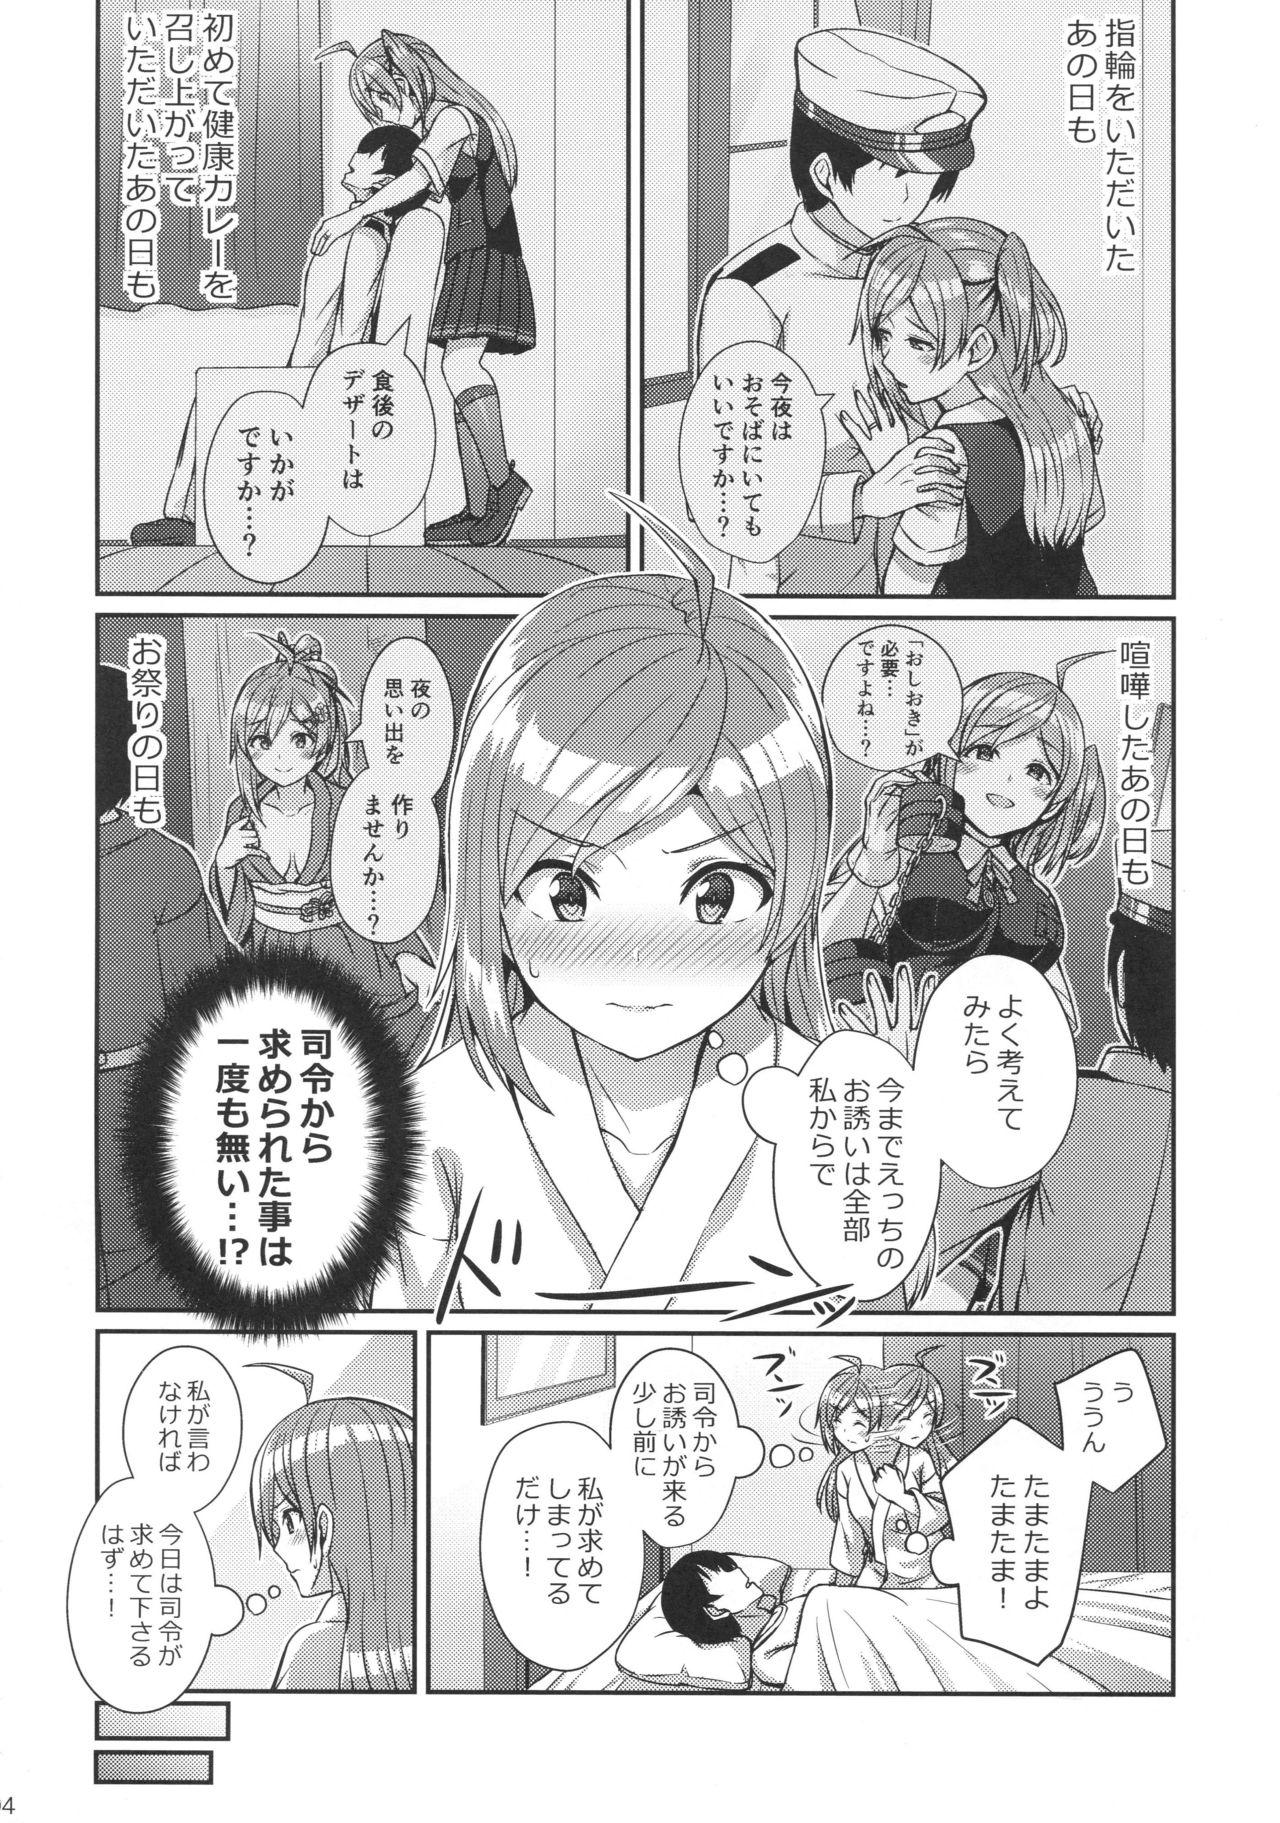 Chick Hagikaze wo Aishite Hoshii desu. - Kantai collection Fun - Page 3